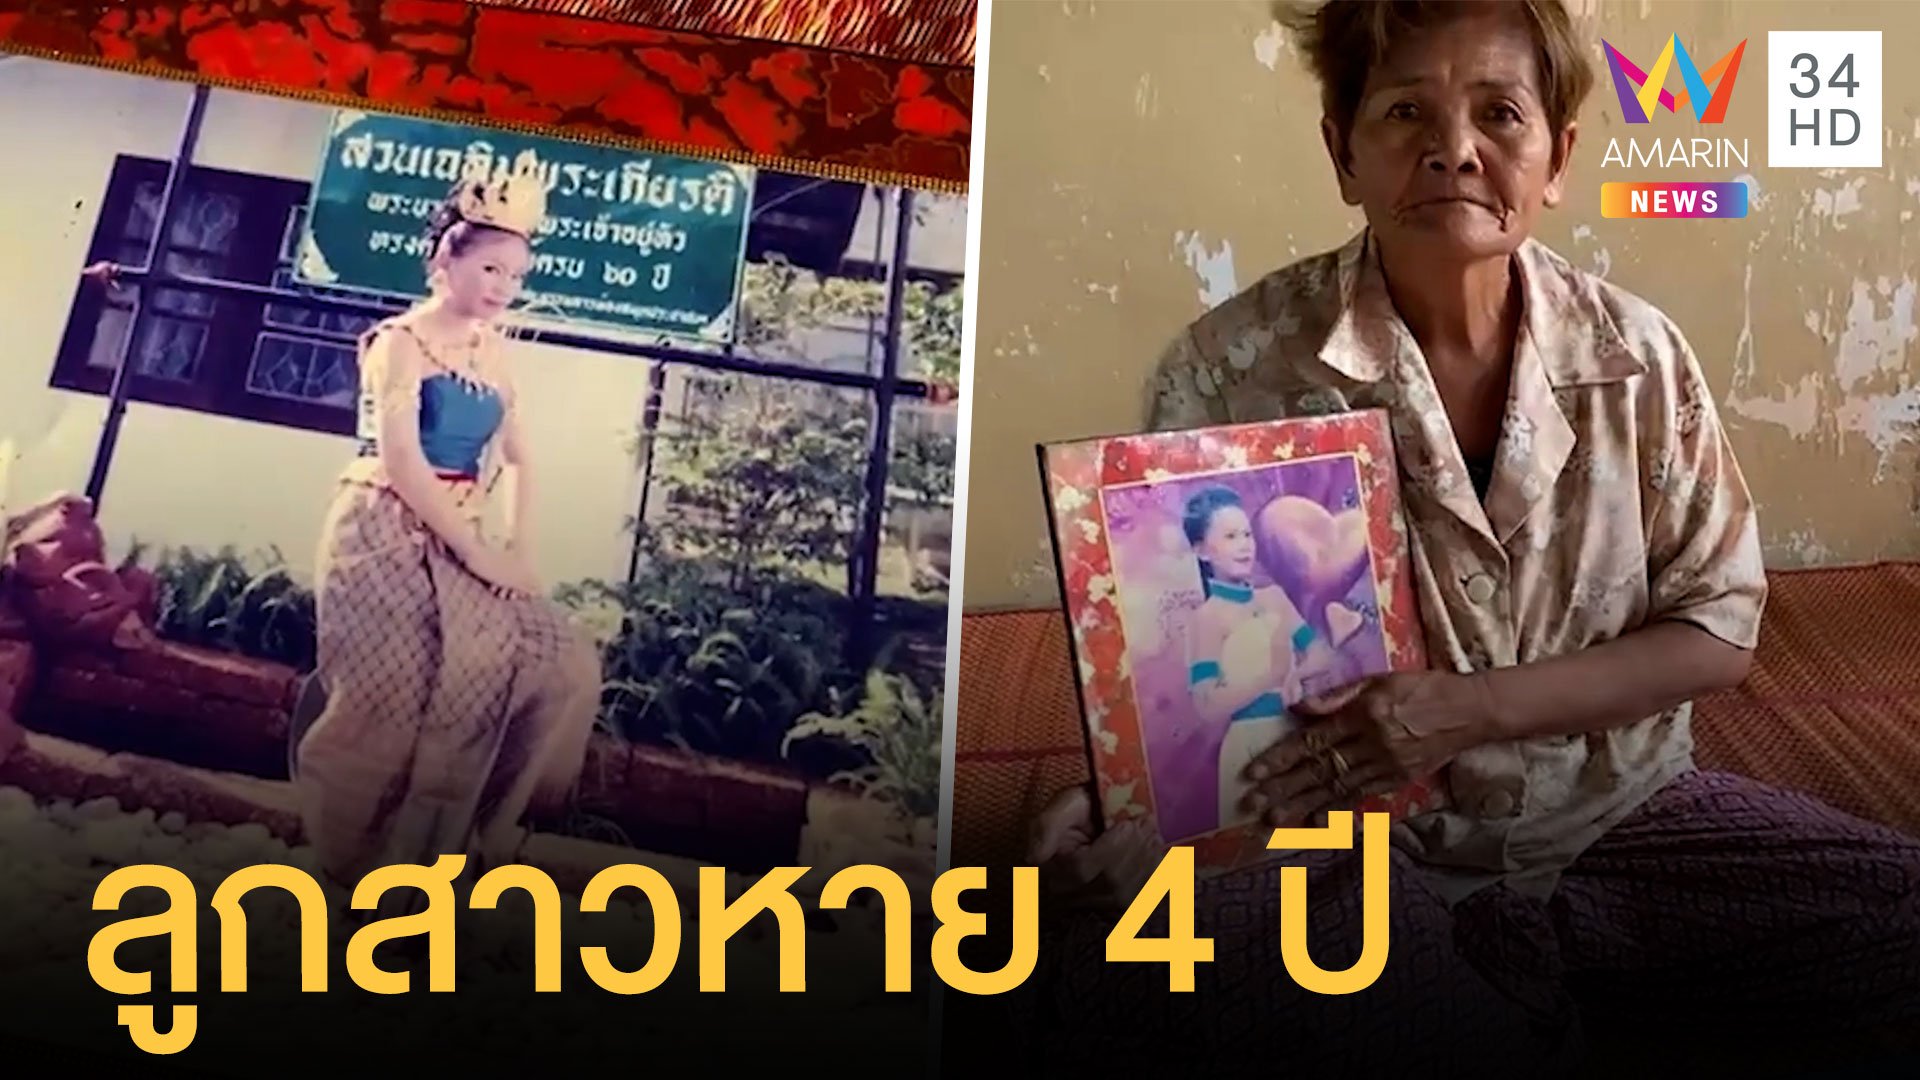 ยายตามหาลูกสาวหายตัวไม่กลับบ้านแล้ว 4 ปี | ข่าวอรุณอมรินทร์ | 1 มิ.ย. 64 | AMARIN TVHD34